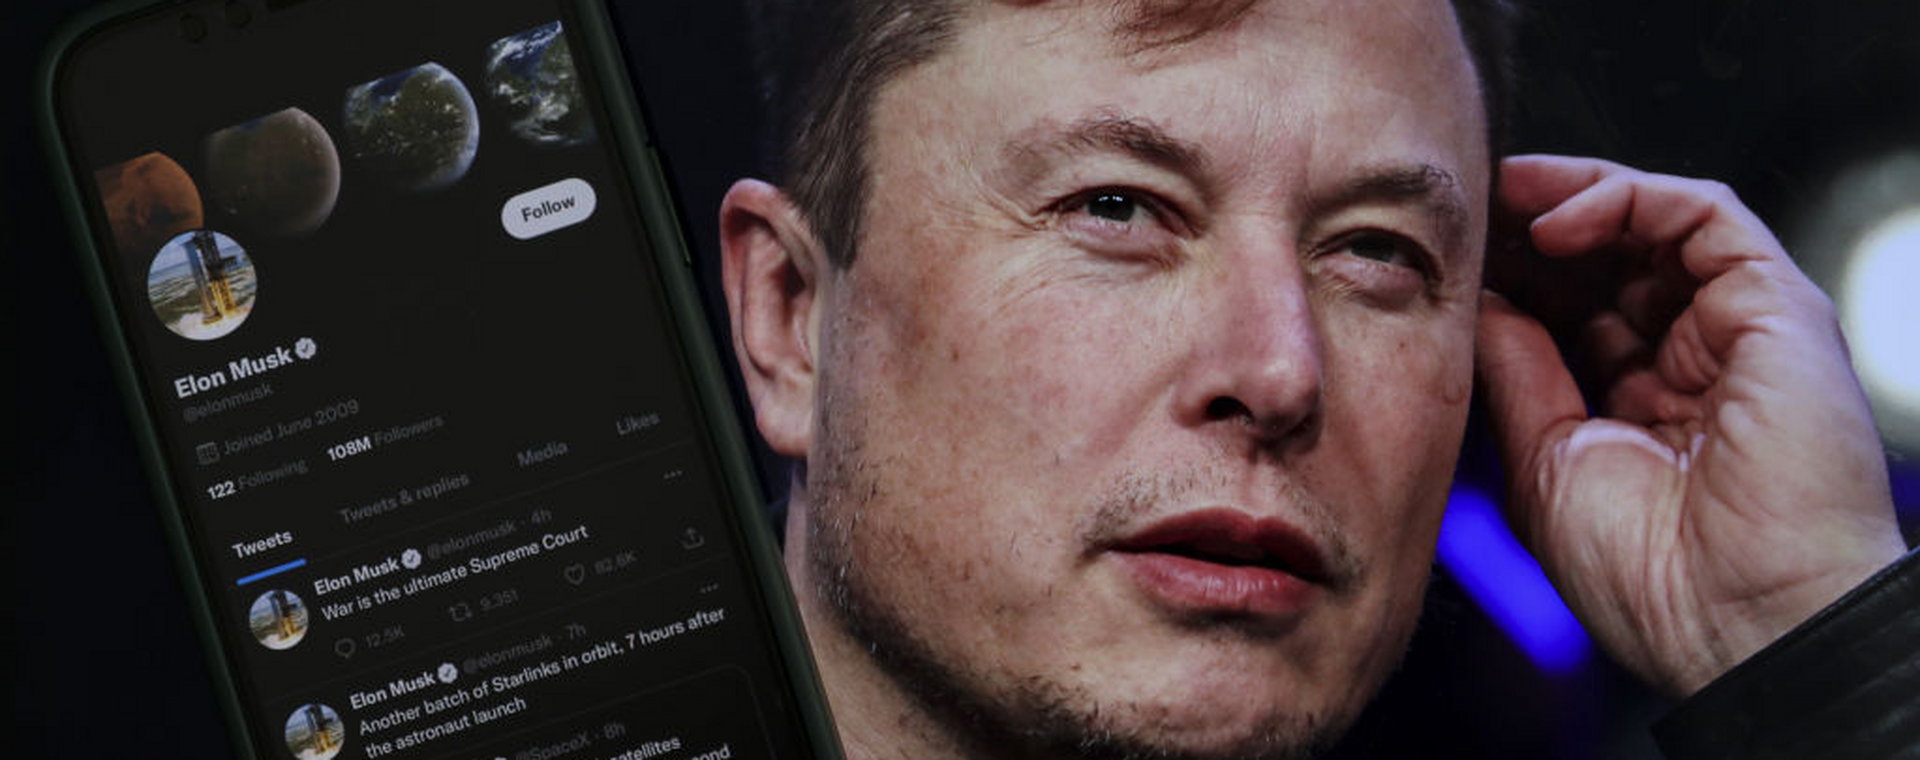 Zwolnienia grupowe w Twitterze rozpoczną się w piątek 4 listopada. Na zdjęciu: Elon Musk.